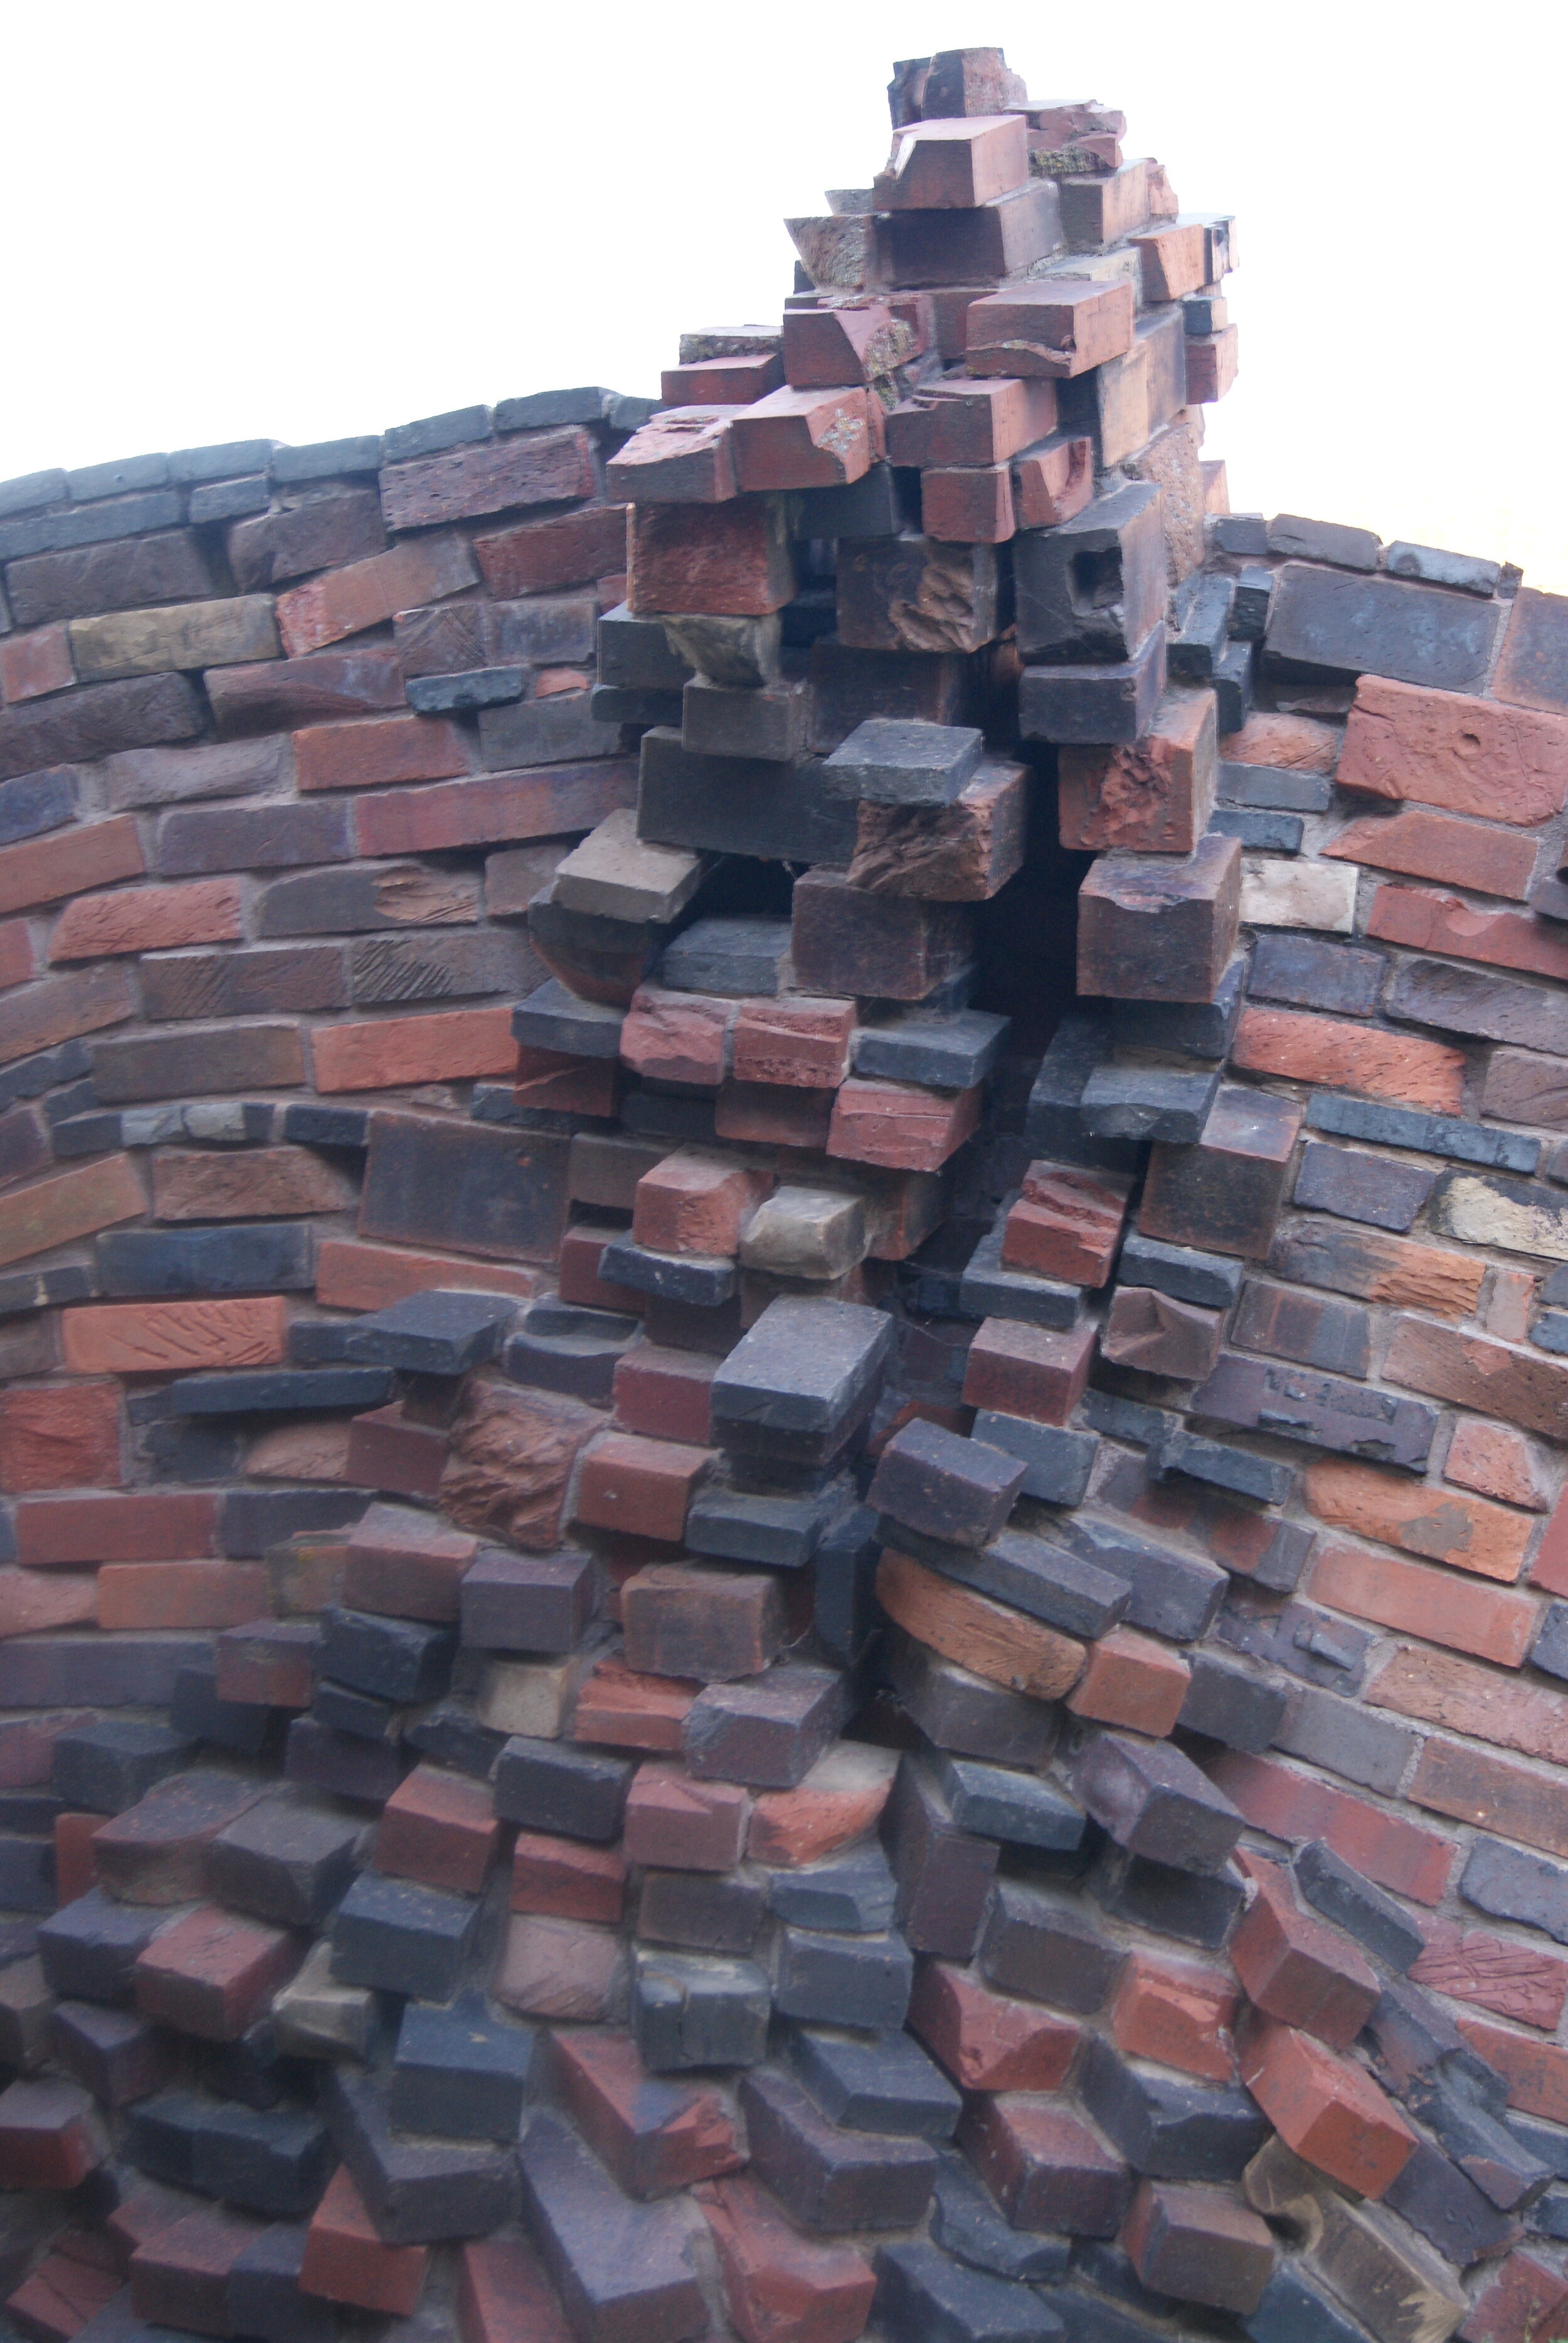 Keraunos wall, craggy texture